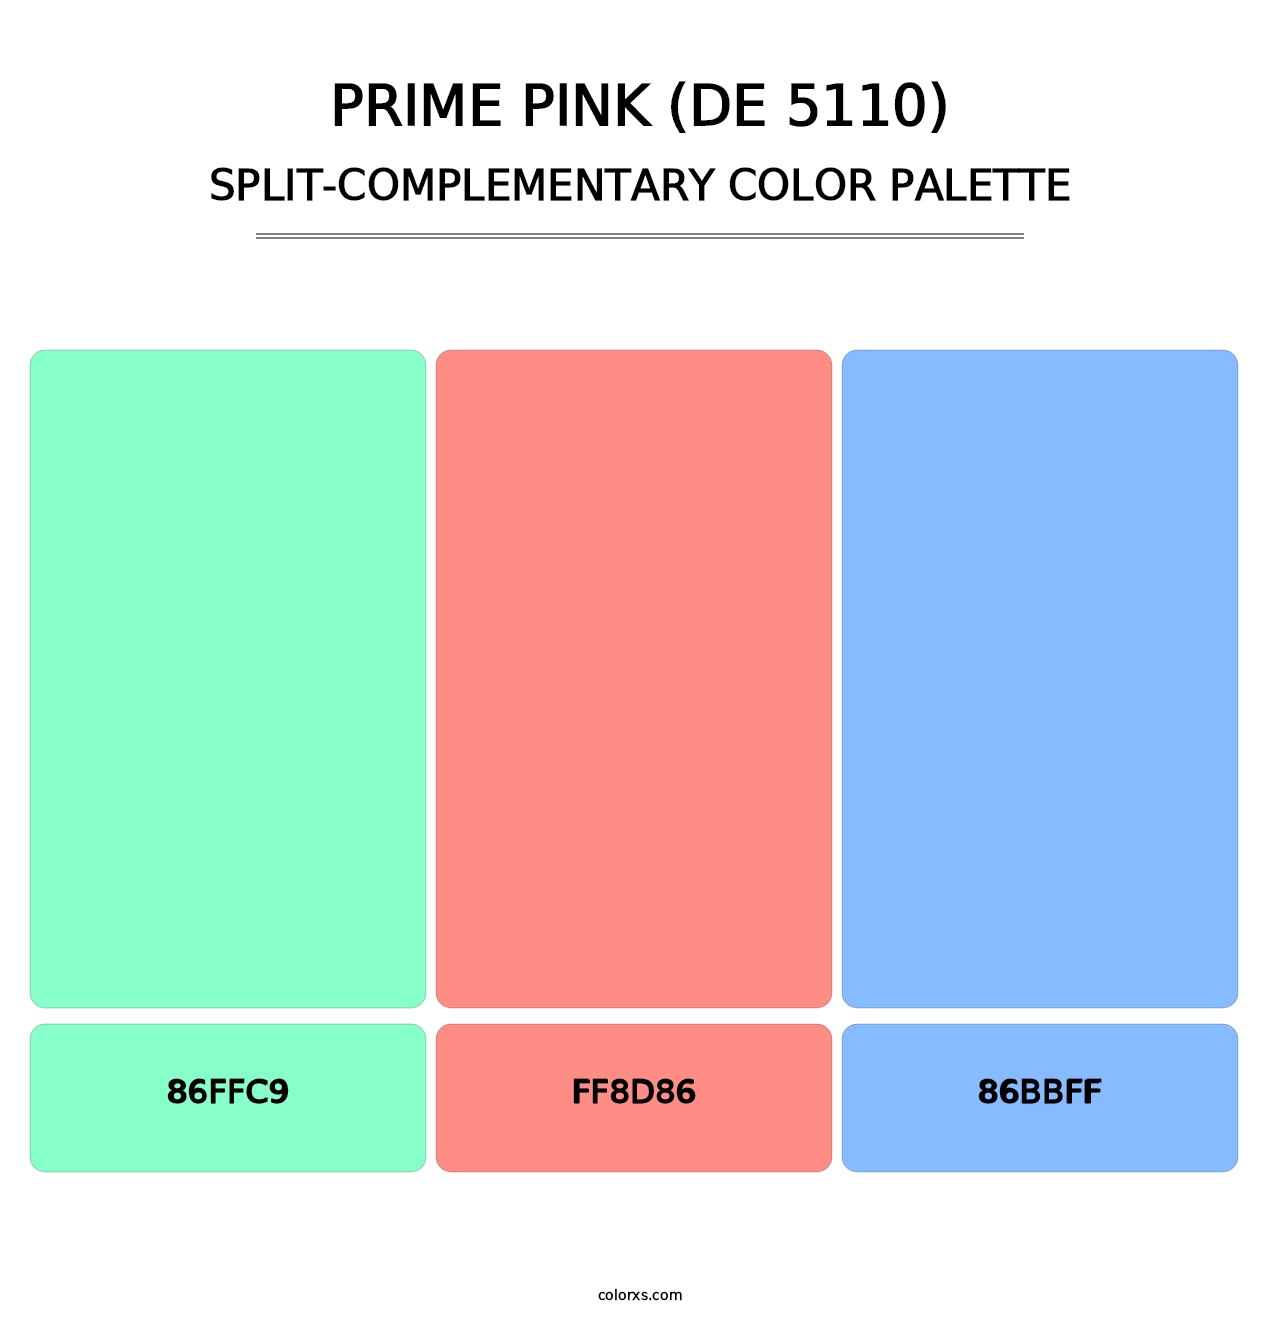 Prime Pink (DE 5110) - Split-Complementary Color Palette